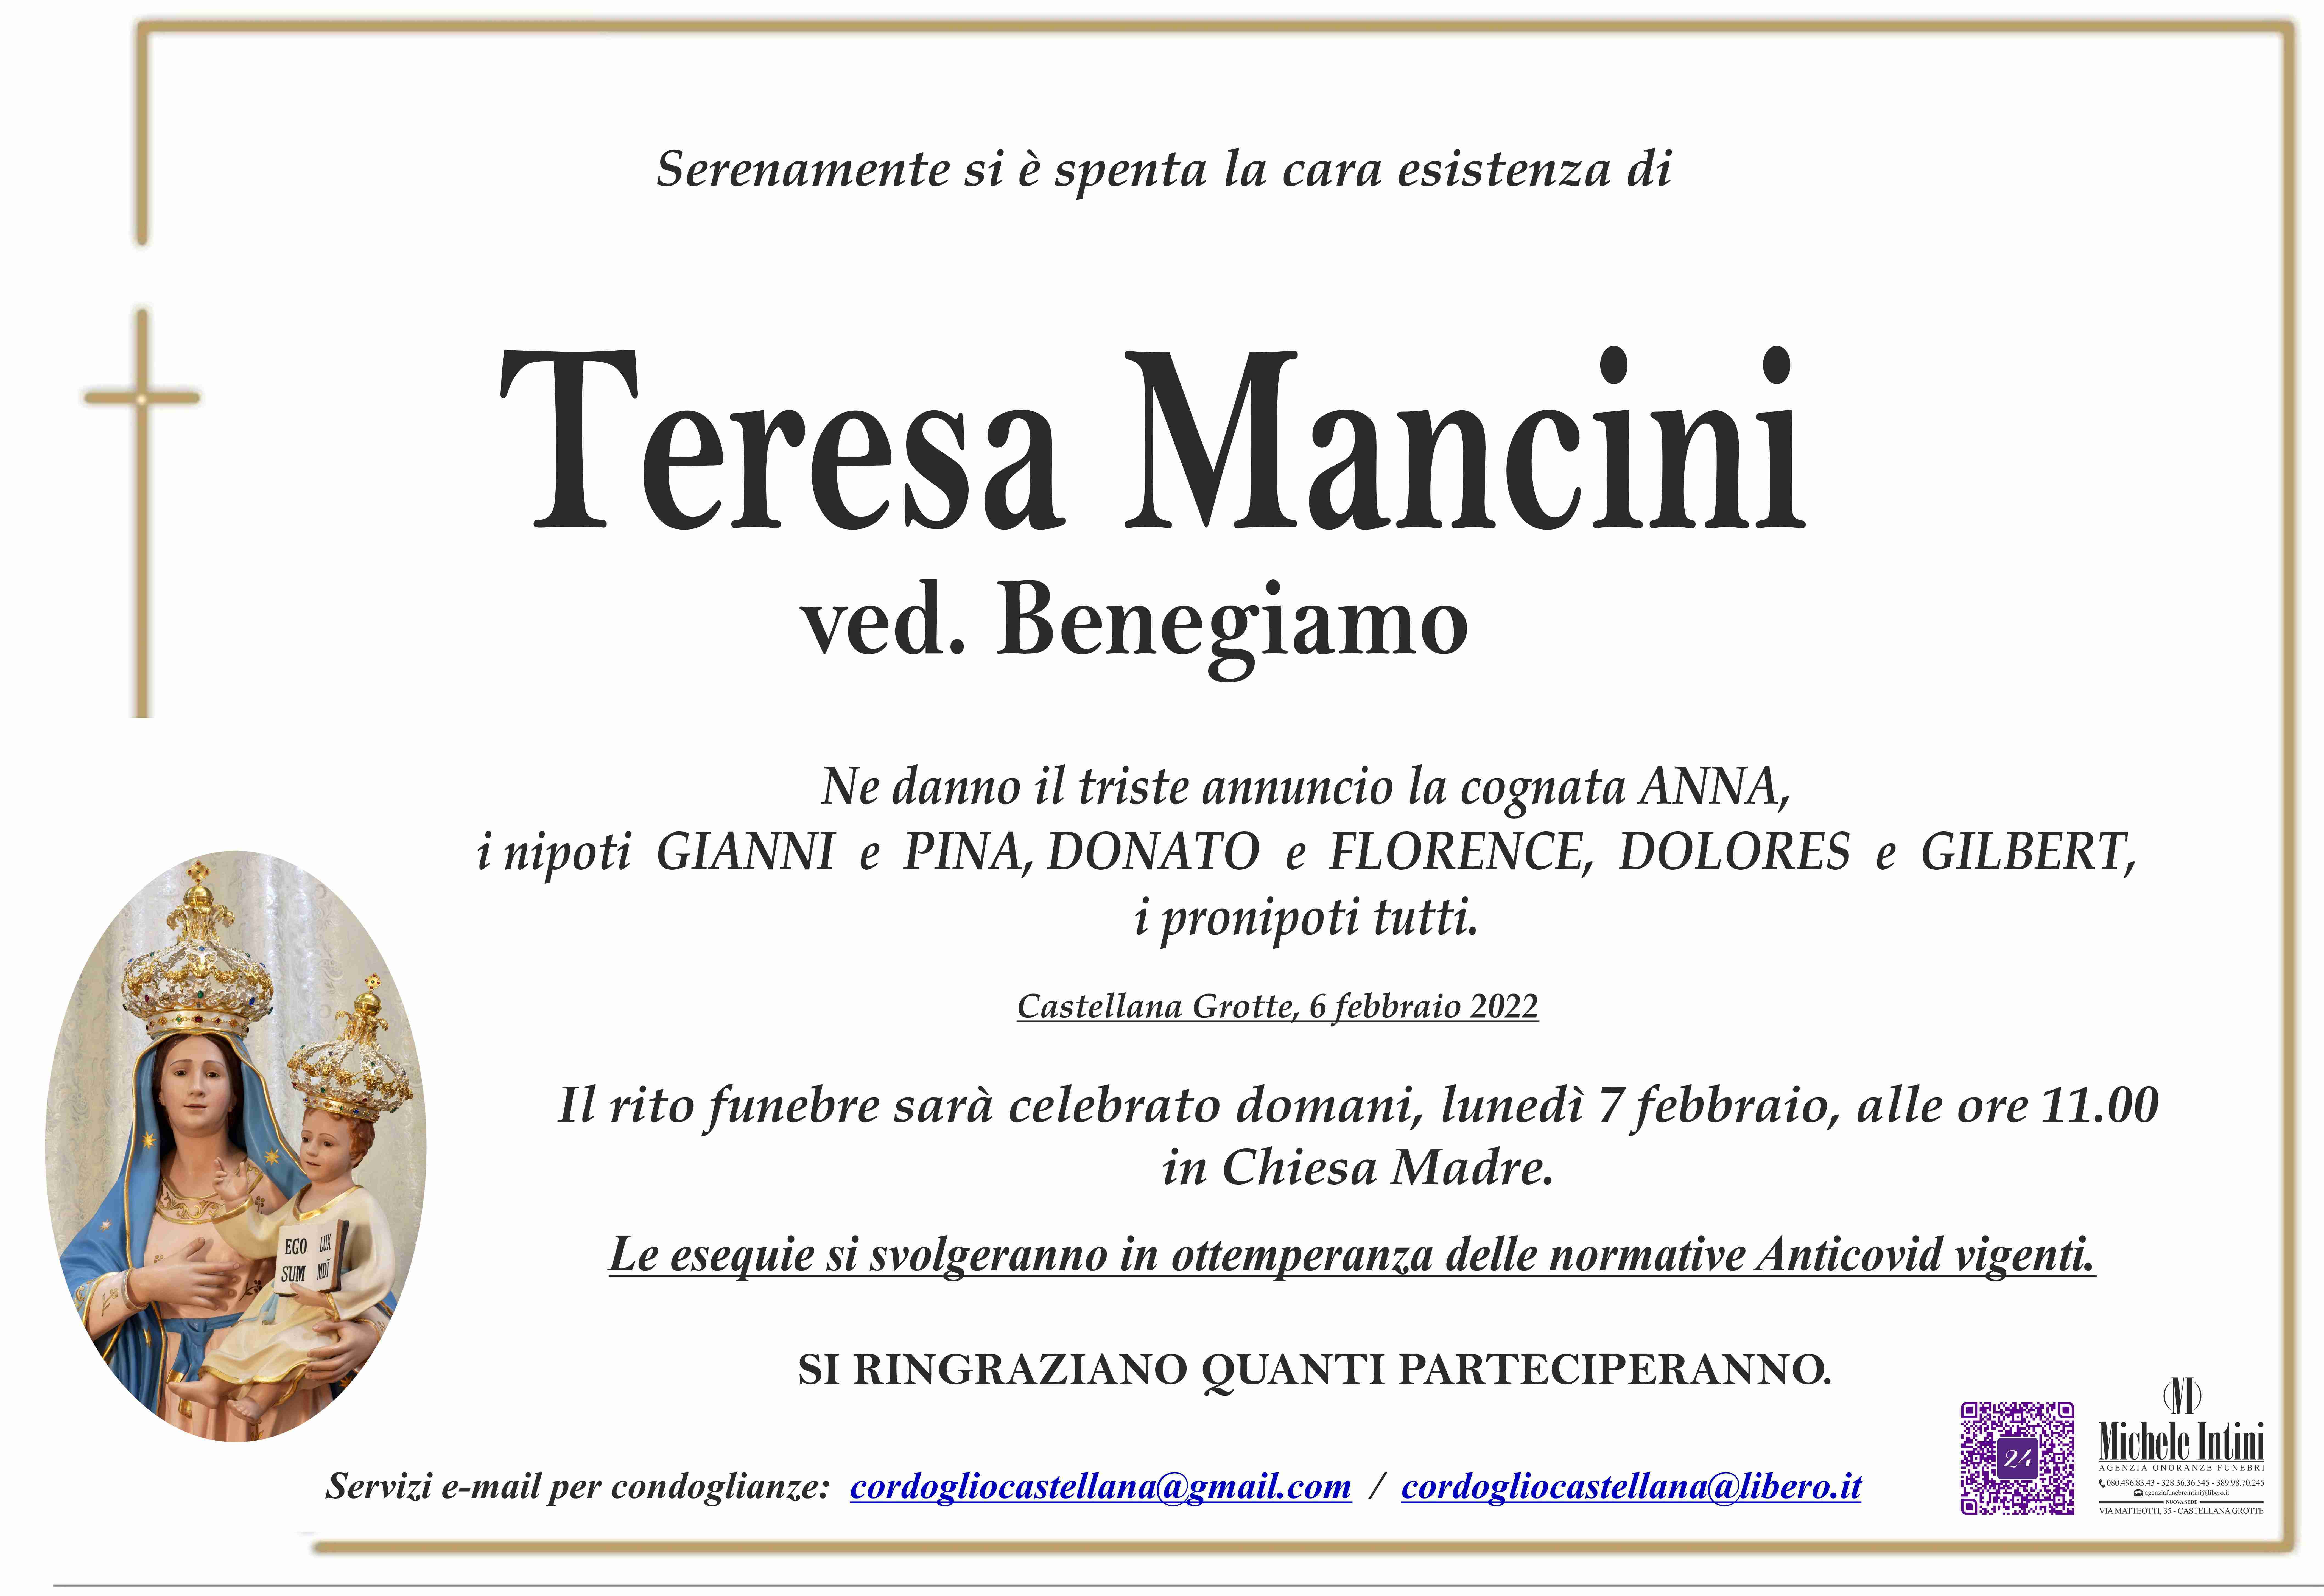 Teresa Mancini